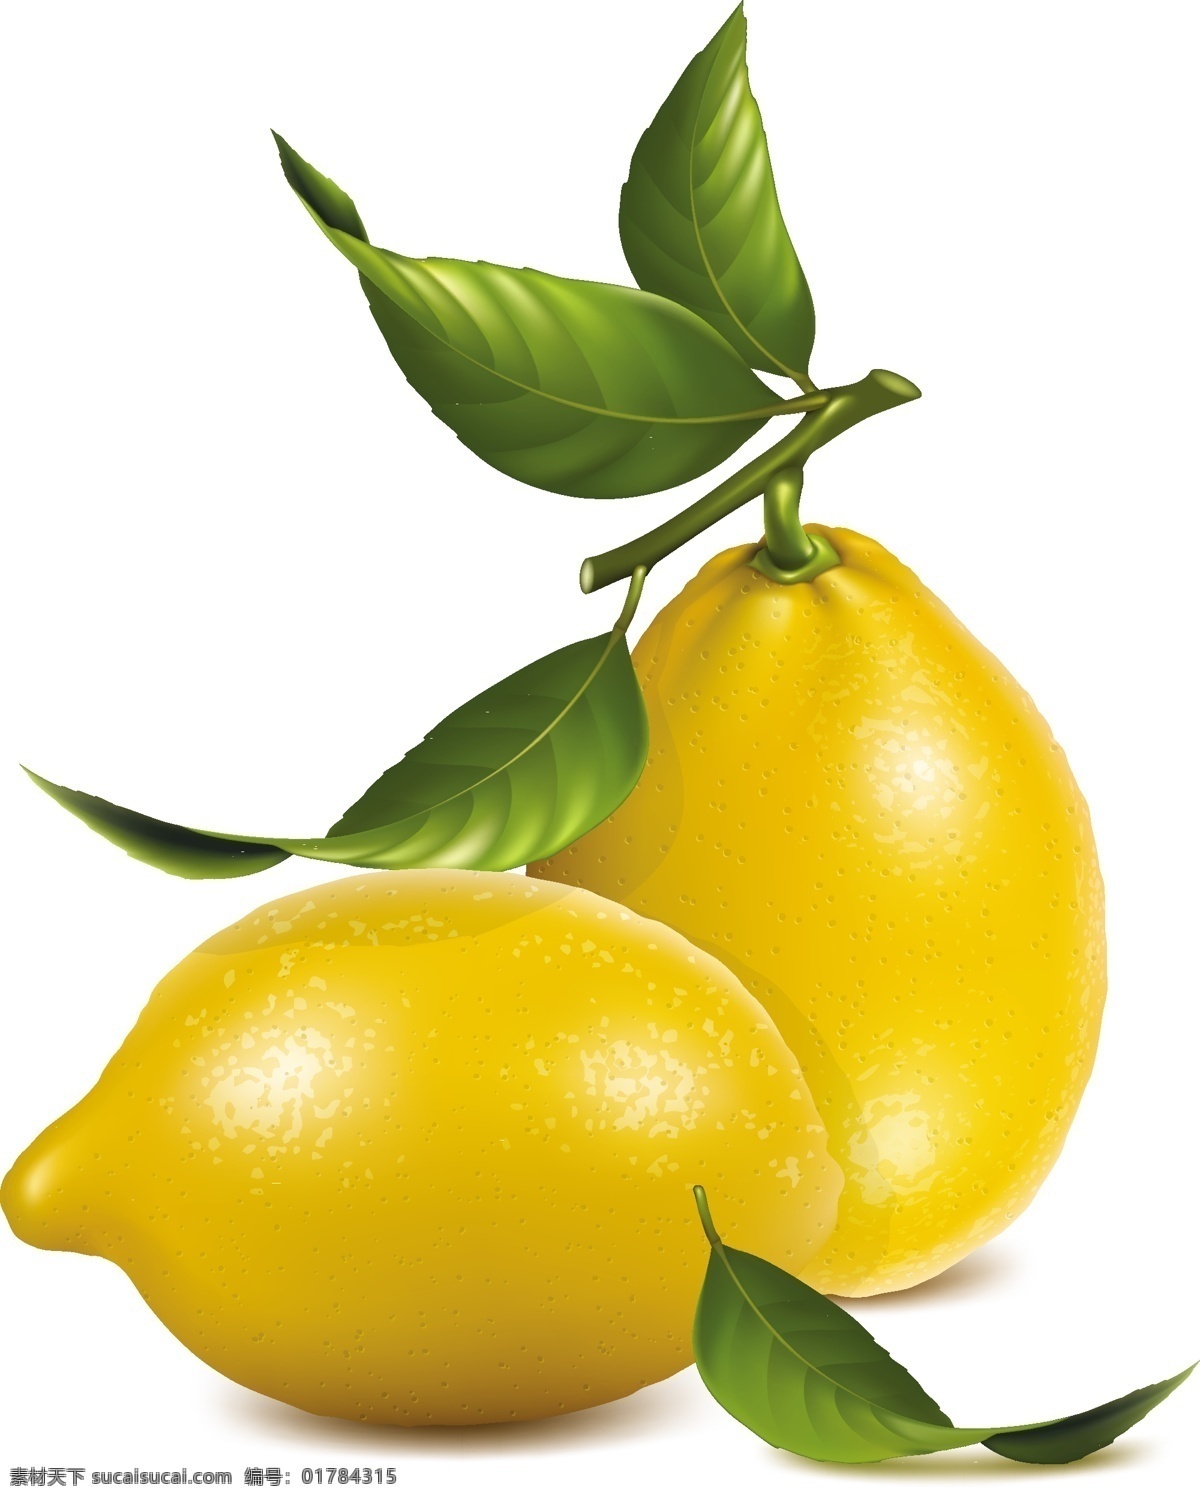 柠檬 插图 矢量 柠檬插图矢量 柠檬插图素材 柠檬插图 柠檬矢量素材 柠檬矢量 柠檬素材 共享设计矢量 生物世界 水果